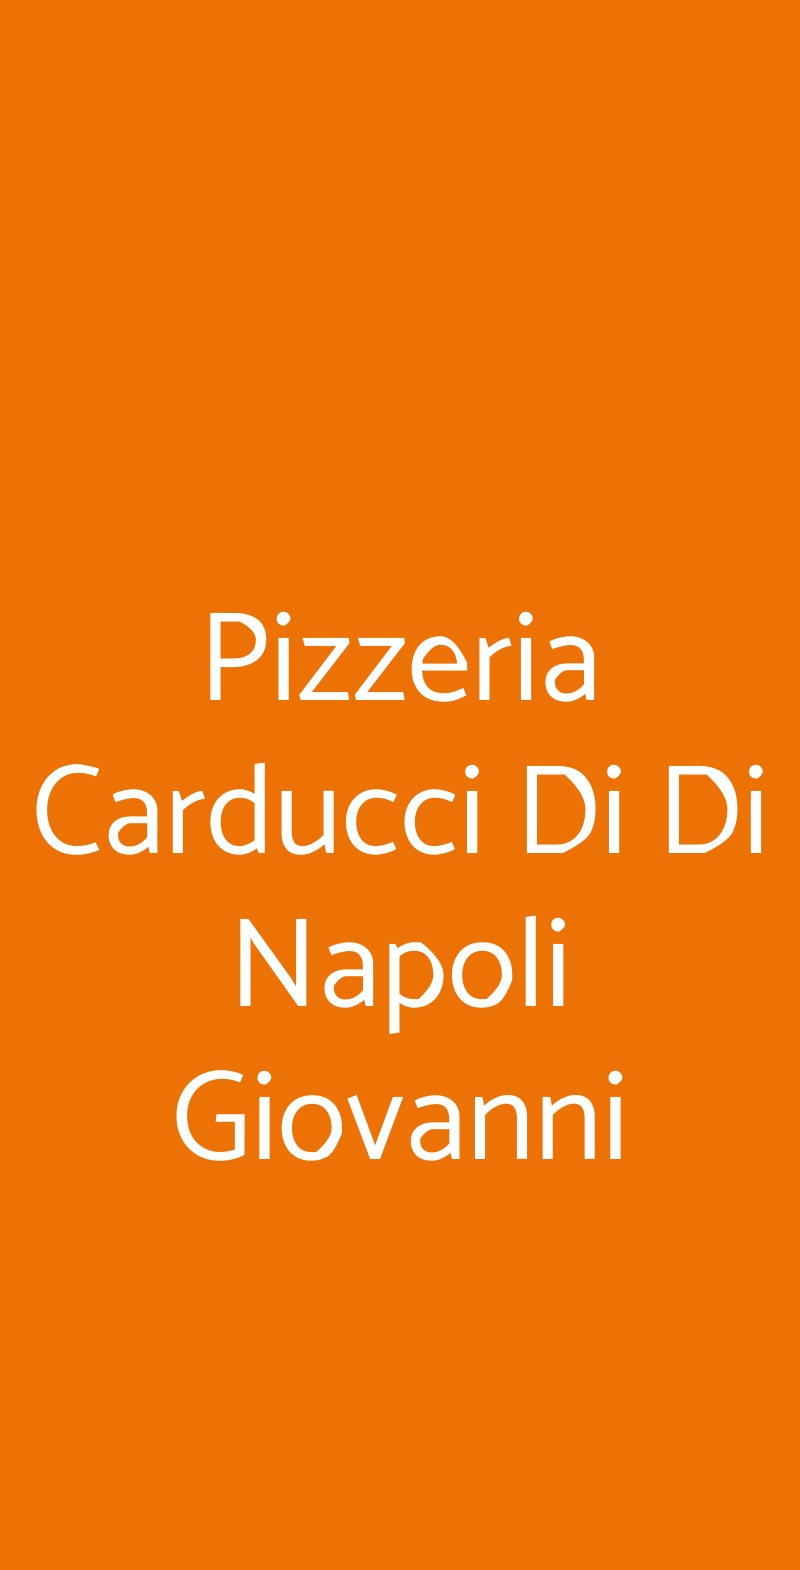 Pizzeria Carducci Di Di Napoli Giovanni Casoria menù 1 pagina